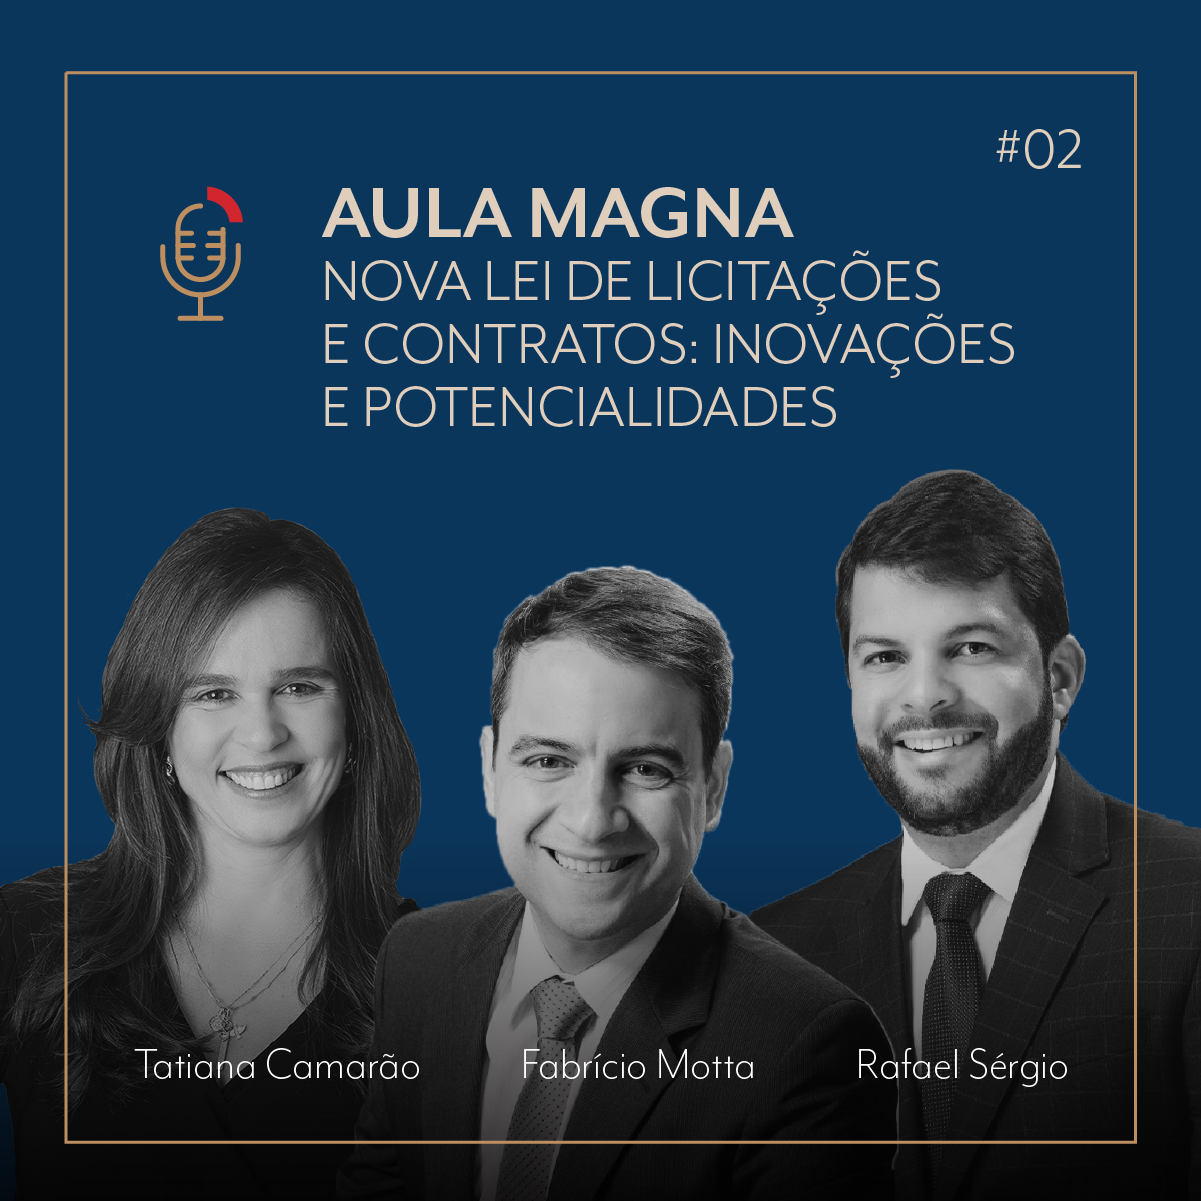 PODCAST | #02 Aula Magna | Nova Lei de Licitações e Contratos: inovações e potencialidades com Fabrício Motta, Tatiana Camarão e Rafael Sérgio